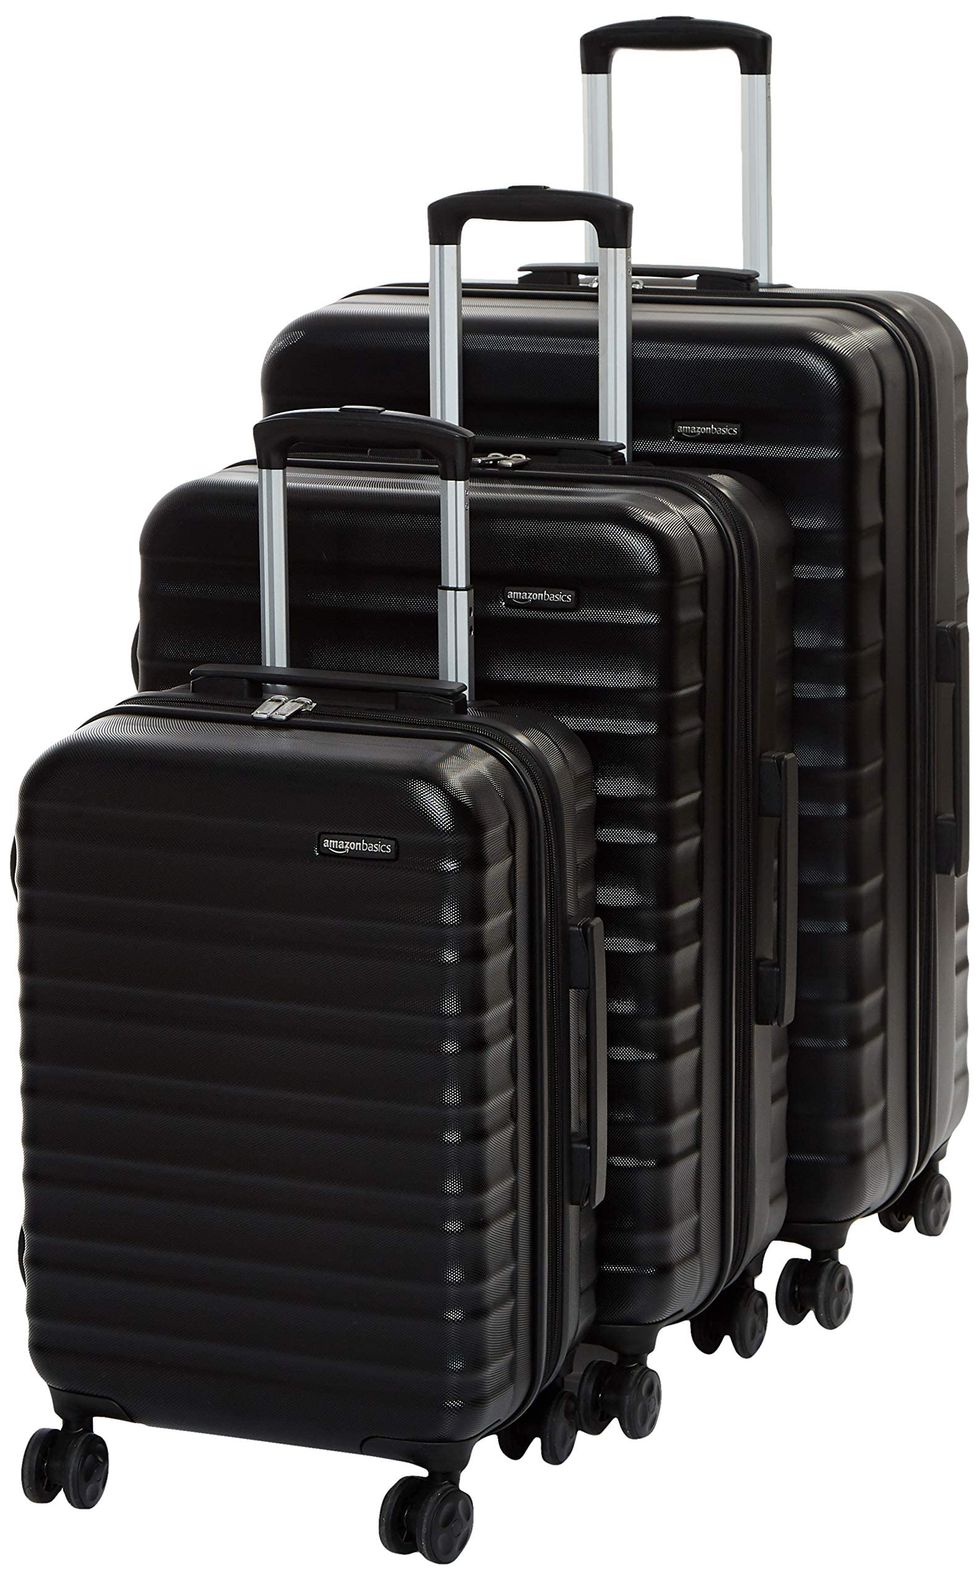 Amazon Basics Hardside 3 Piece Luggage